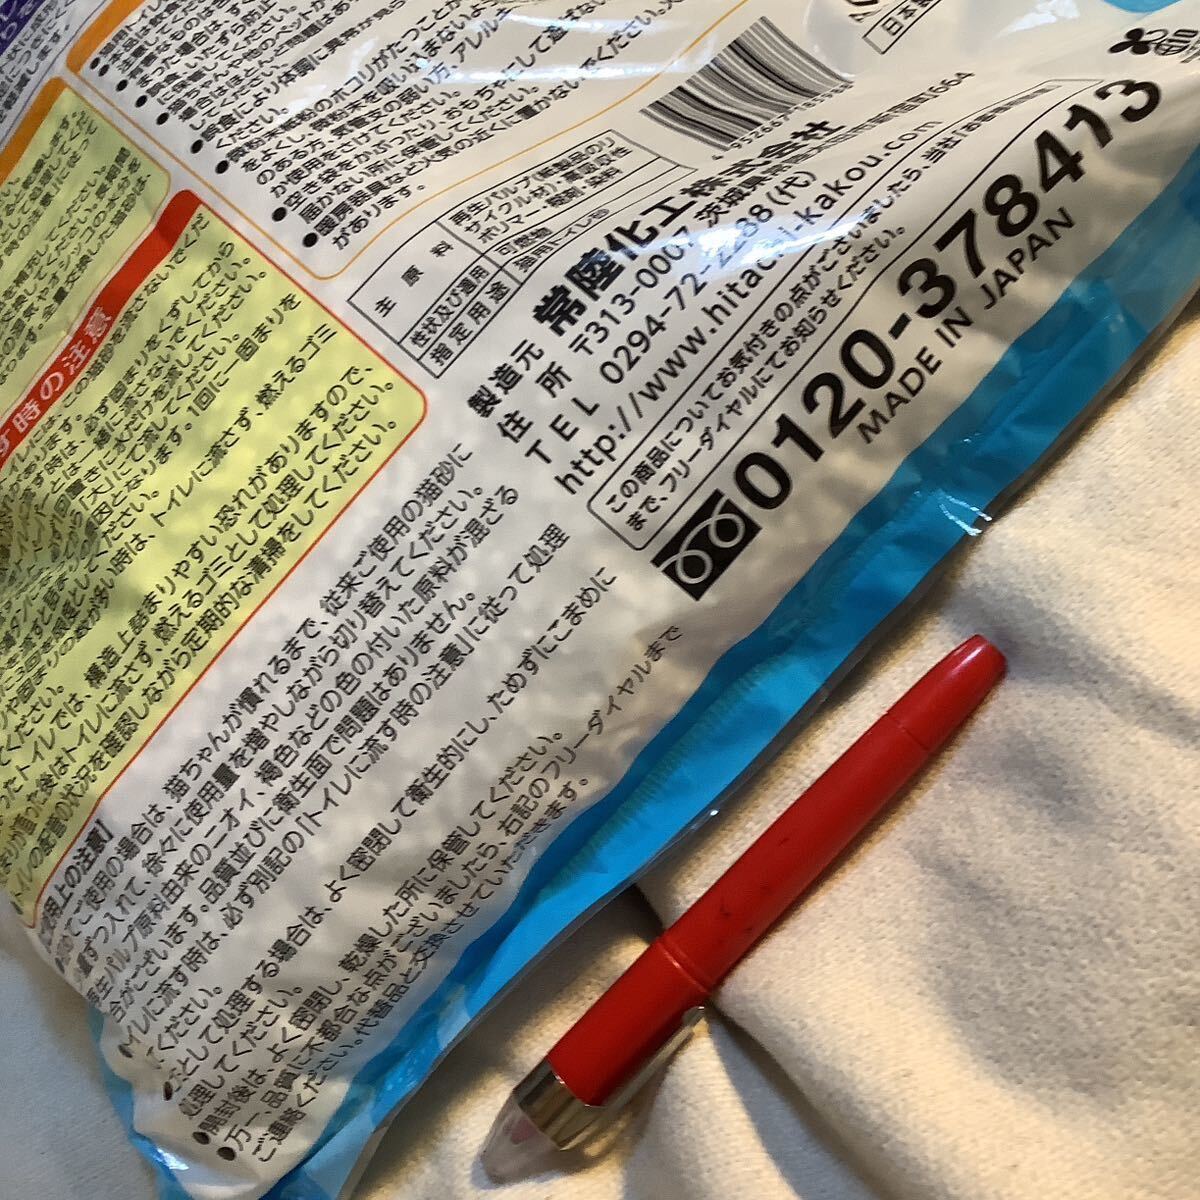  бумажный кошка песок кошка песок штраф голубой 12L 2 пакет скупка исключая 500 иен супер 10% в подарок большой пакет 1-2-3 пакет ... комплектация для небольшое количество .3L. выставляется число много степени выгода 100. модификация 